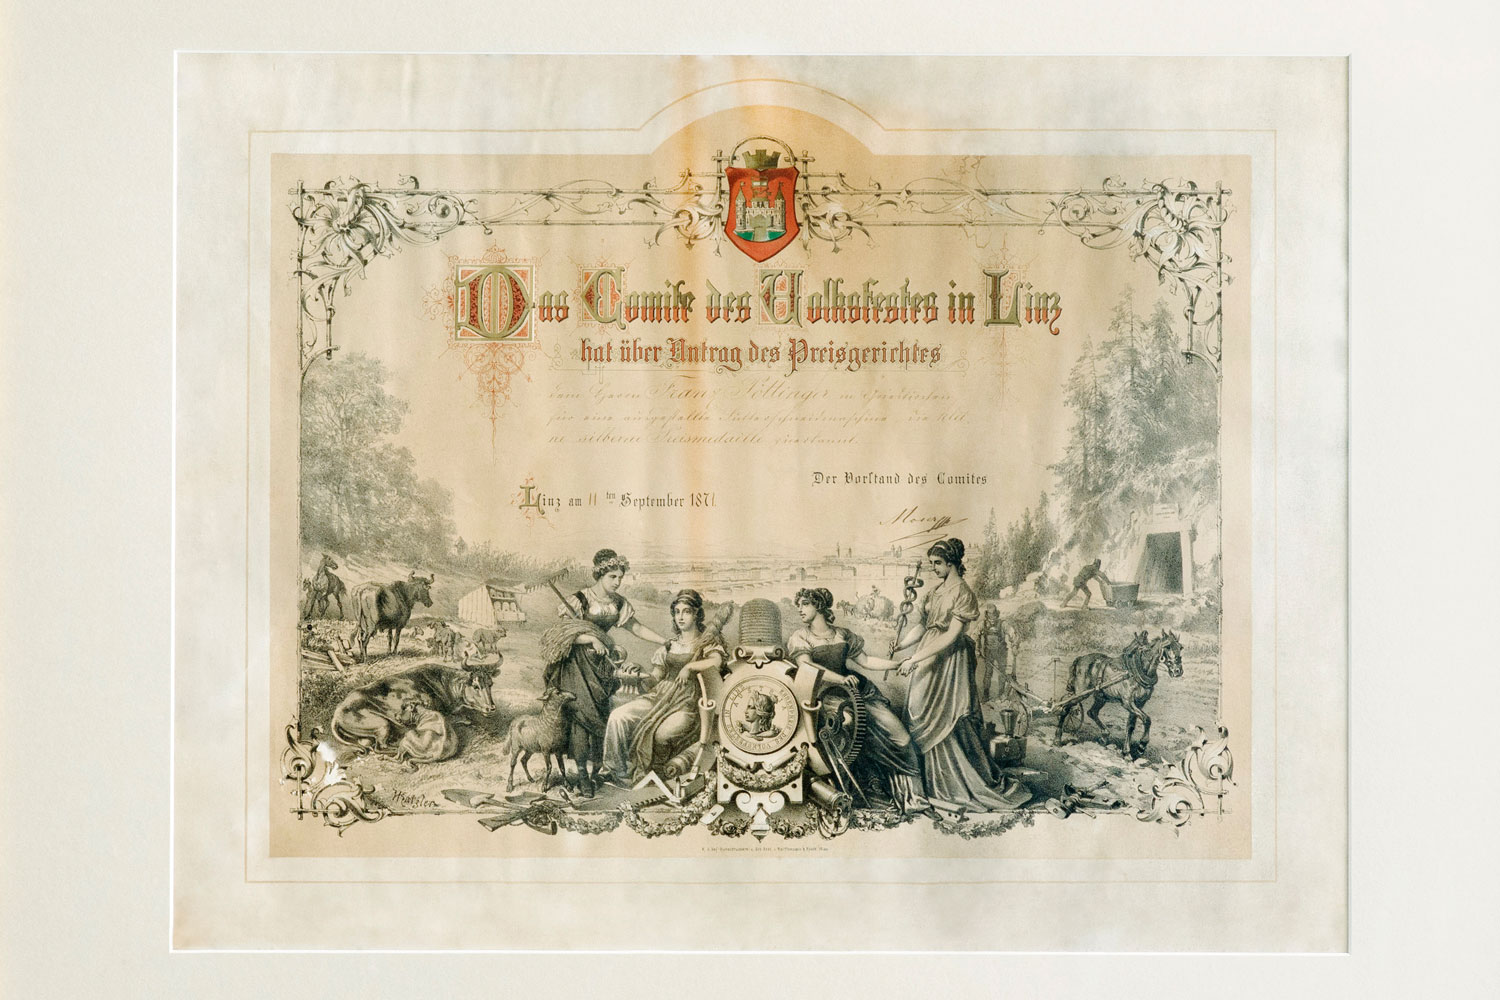 На прохання журі комітет Фольксфесту в Лінці нагородив пана Франца Пьотінгера в Гріскірхені маленькою срібною медаллю за його машину для нарізання корму. Лінц 11 вересня 1871 року